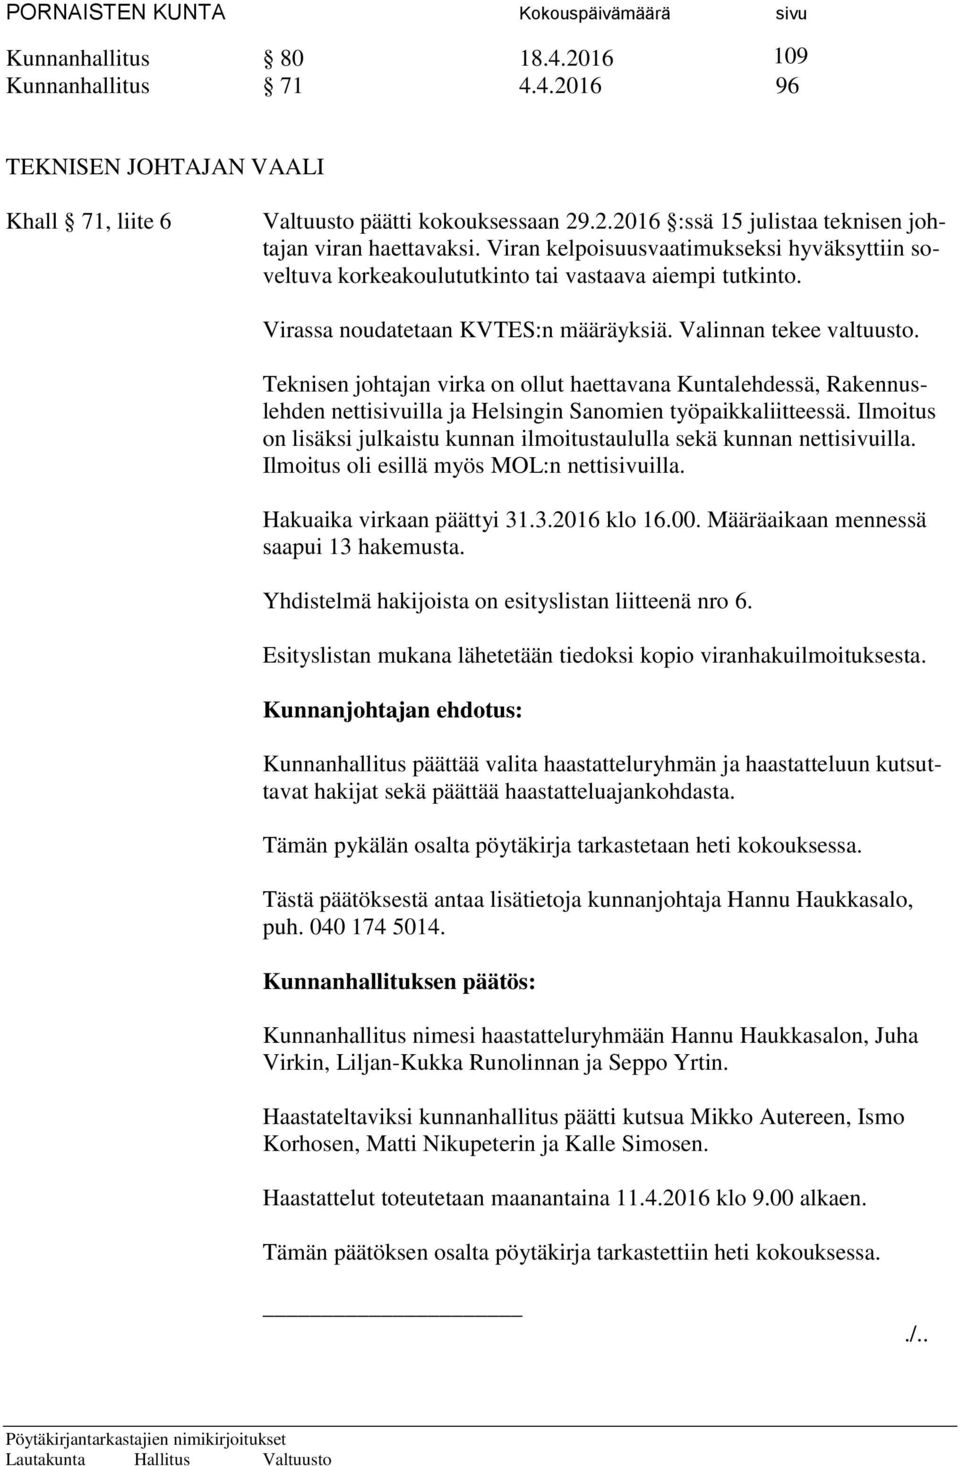 Teknisen johtajan virka on ollut haettavana Kuntalehdessä, Rakennuslehden nettisivuilla ja Helsingin Sanomien työpaikkaliitteessä.